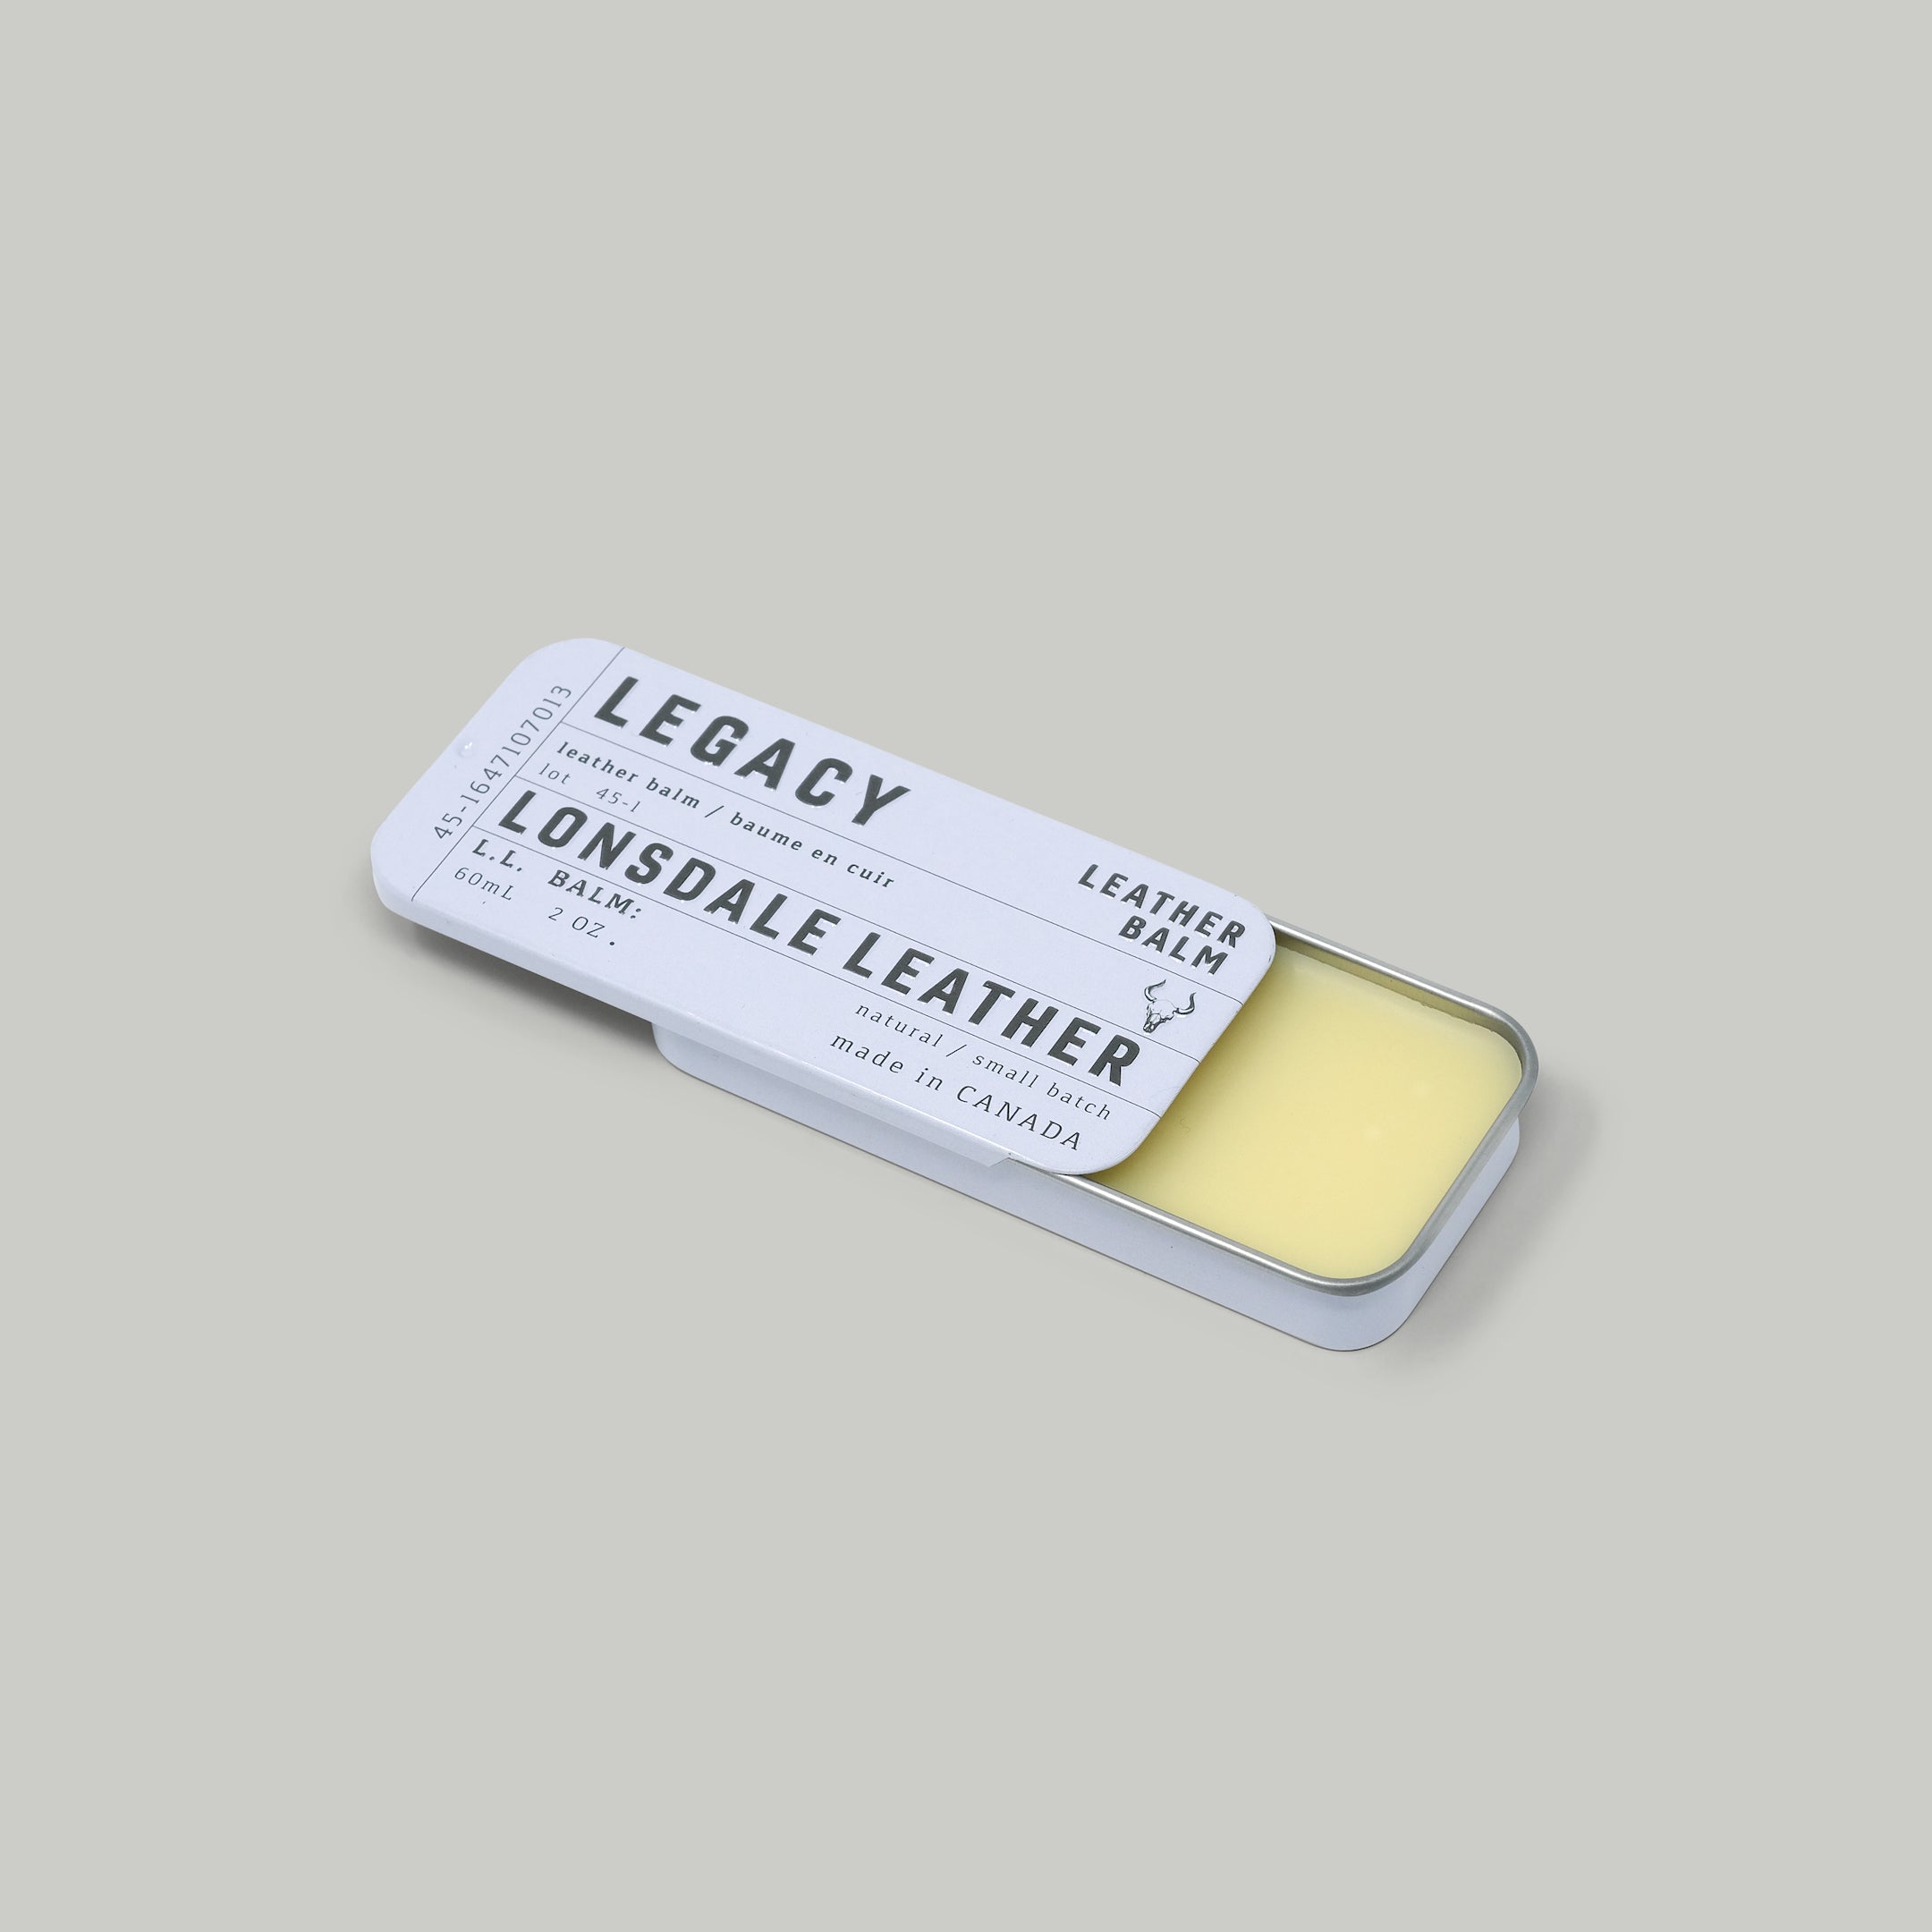 L.L. | LEGACY Leather Balm